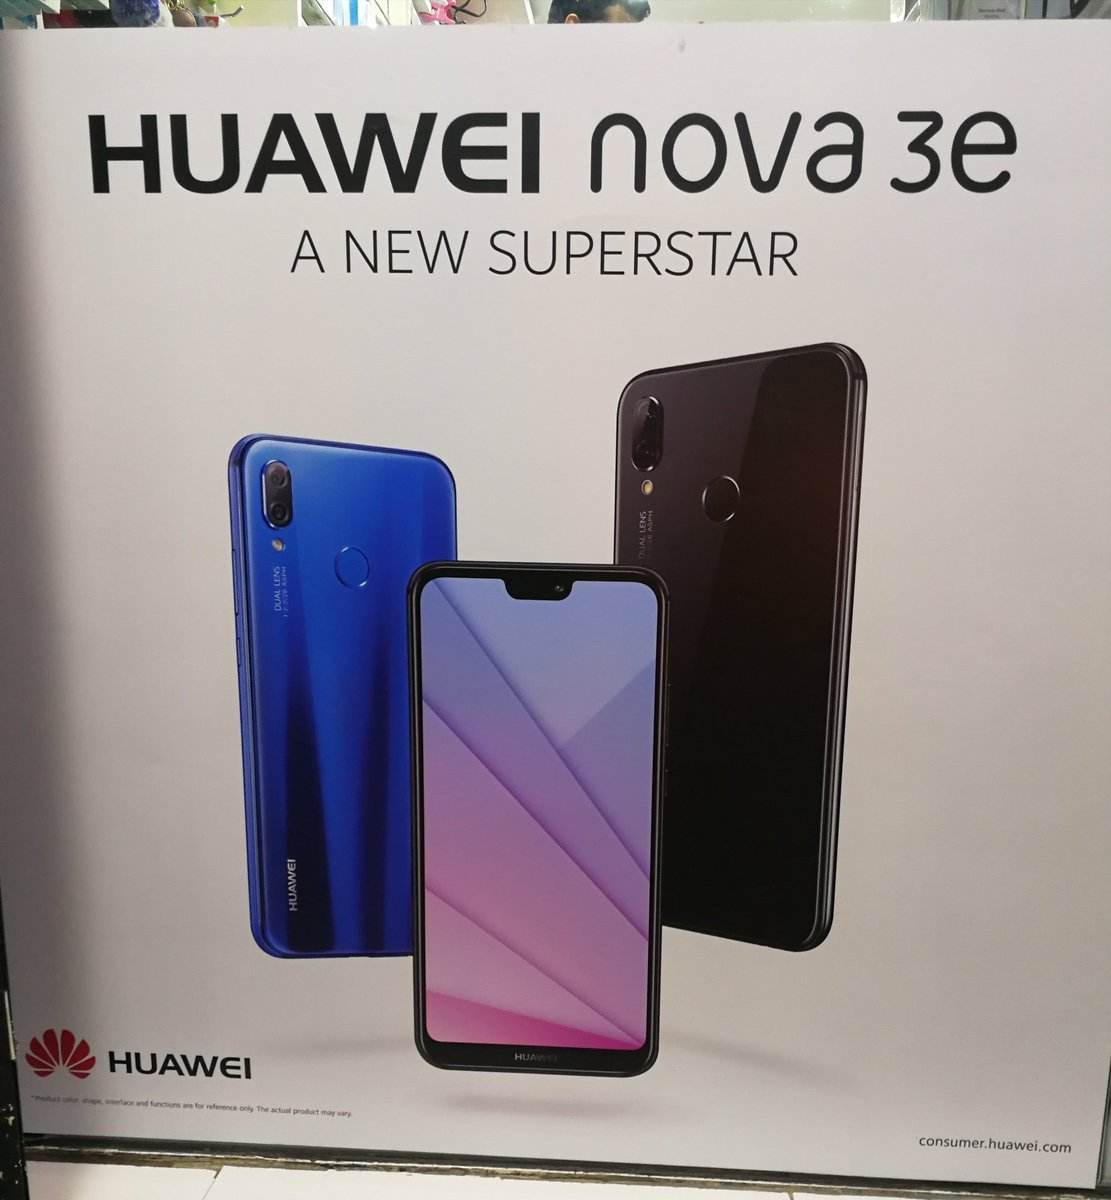 Huawei nova 3e true figure exposure machine